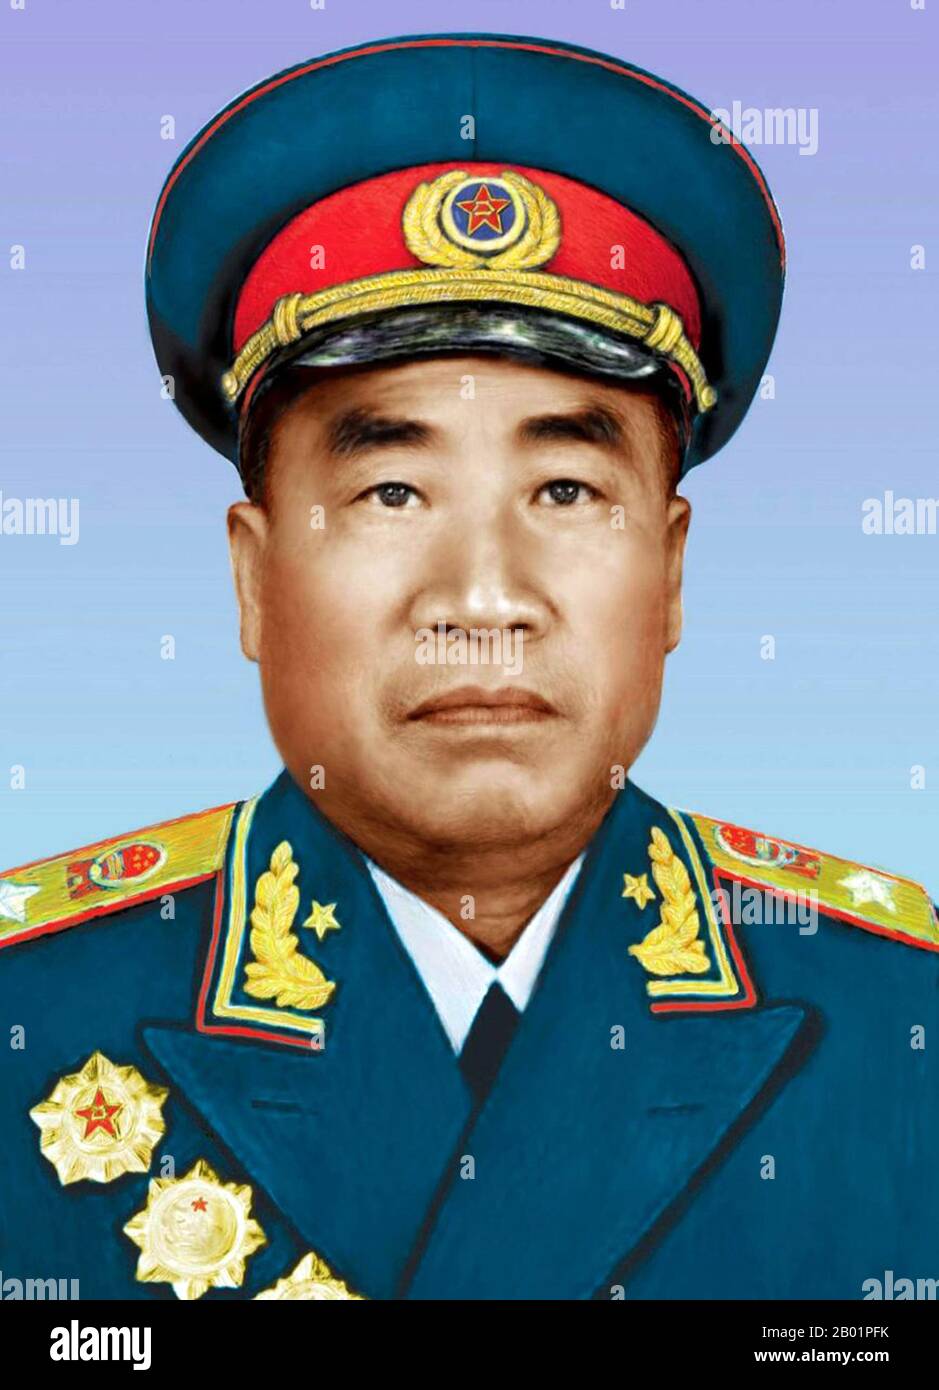 Cina: Zhu De (1 dicembre 1886 – 6 luglio 1976) è stato un generale e genio militare cinese, 1955 circa. Zhu De era un leader militare comunista cinese e statista. È considerato il fondatore dell'Armata Rossa cinese (il precursore dell'Esercito Popolare di Liberazione) e il tattico che progettò la vittoria della Repubblica Popolare Cinese durante la guerra civile cinese. Foto Stock